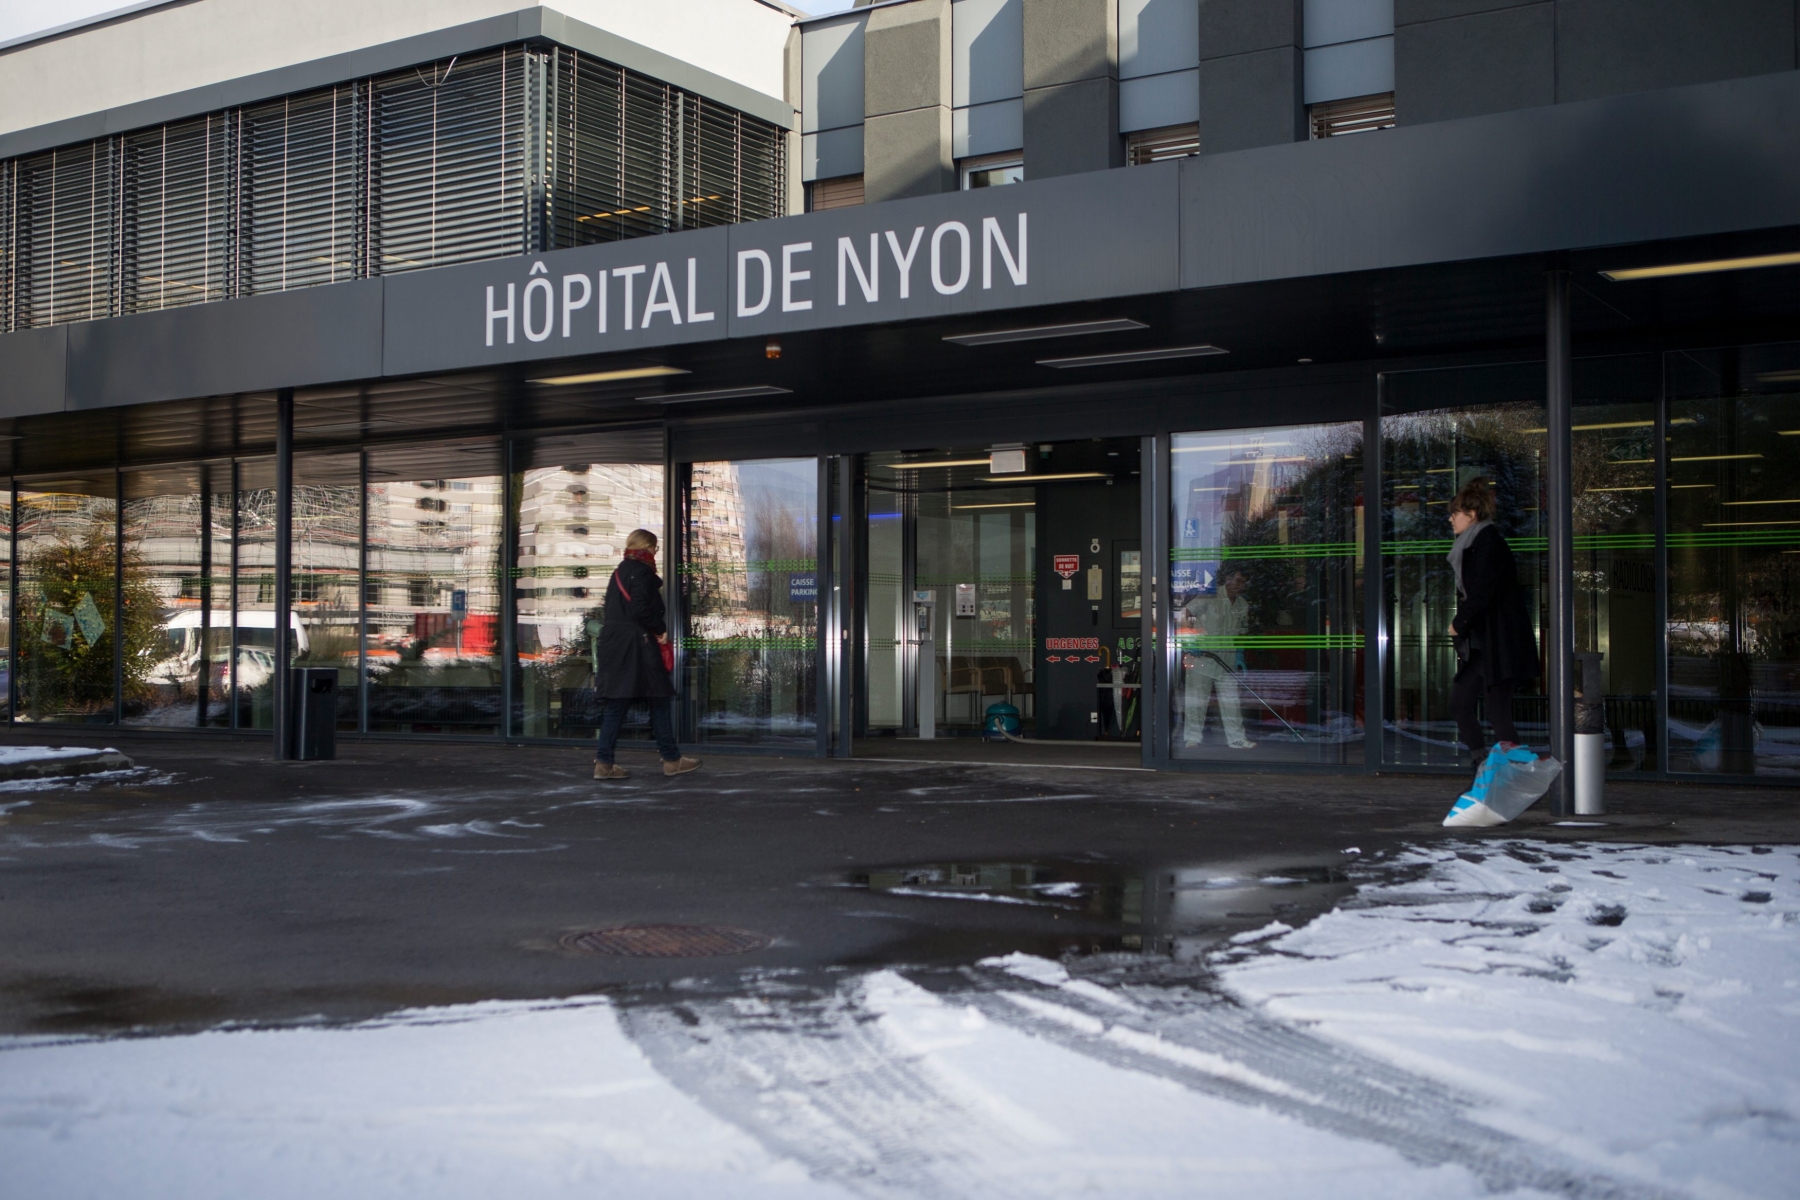 Nyon, mercredi 11 janvier 2017
Photos d'illustration pour un reportage sur la grippe. L'hôpital de Nyon sur la neige

Sigfredo Haro Reportage grippe, Nyon